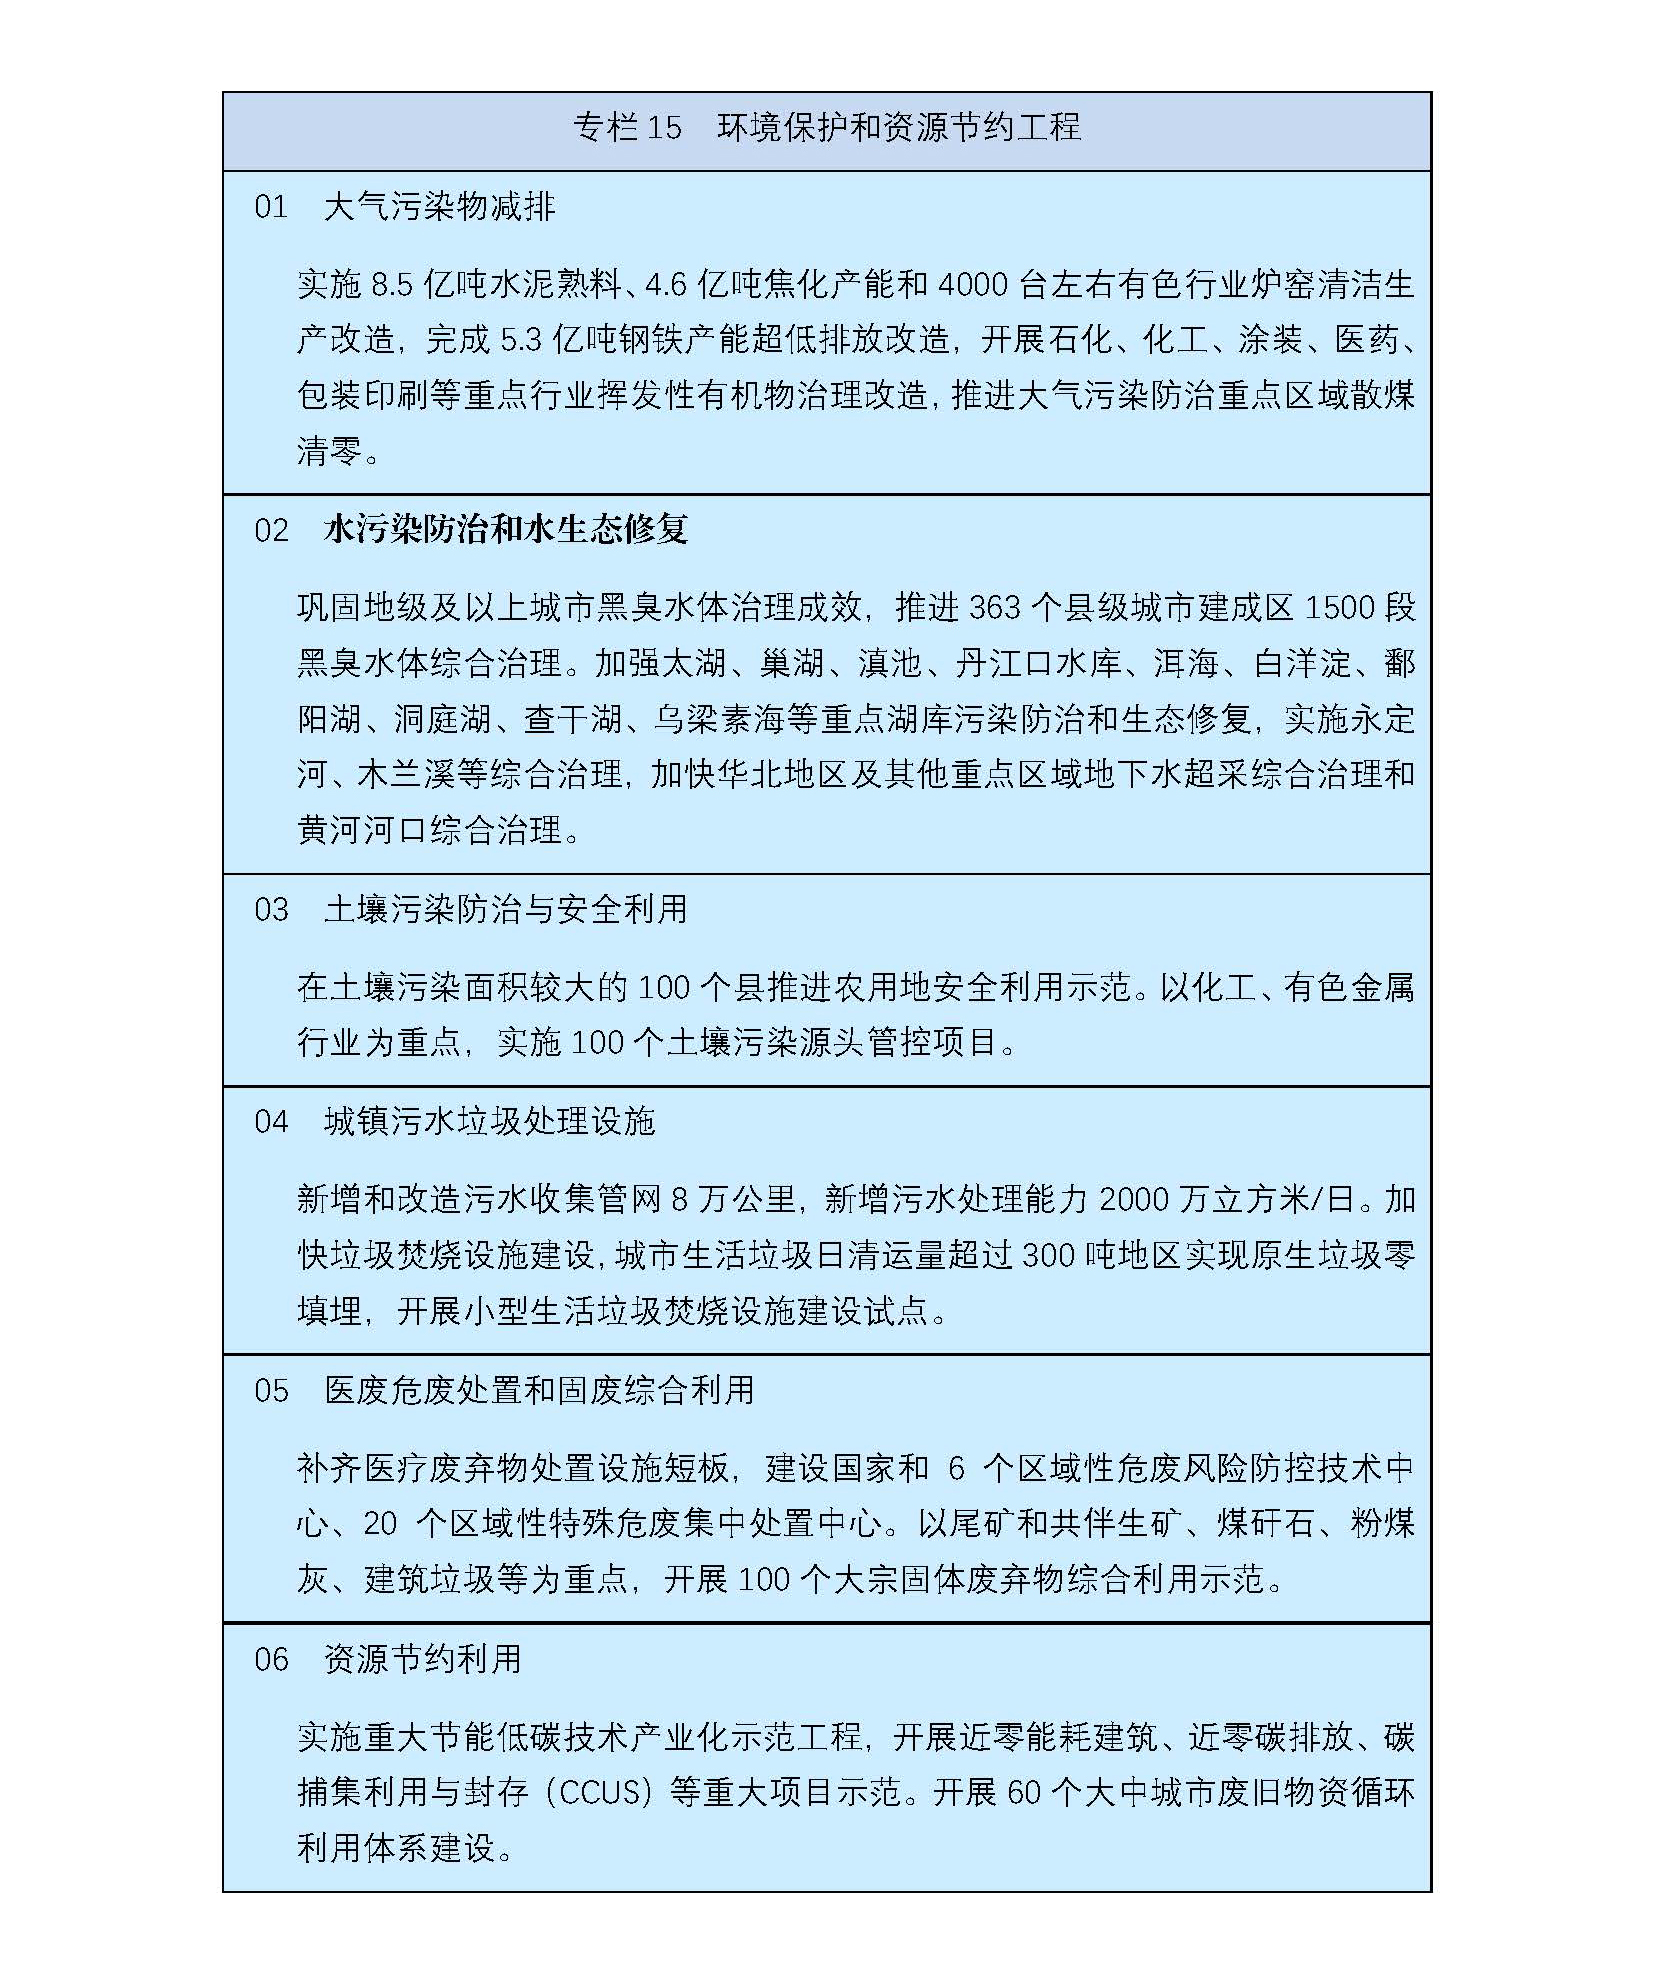 【日语版】《中华人民共和国国民经济和社会发展第十四个五年规划